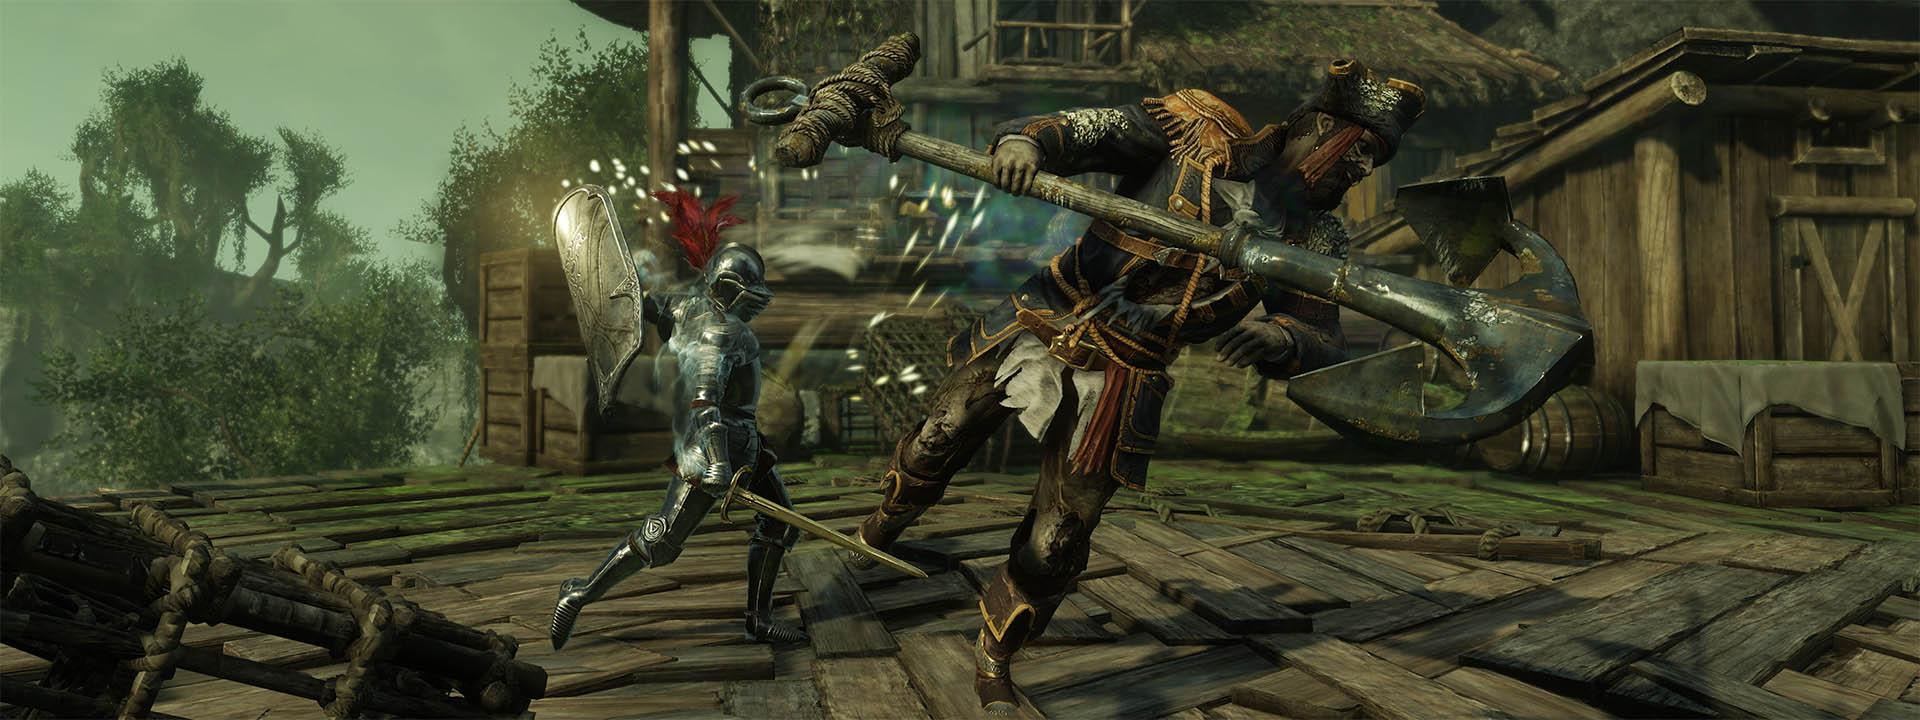 Uno screenshot raffigurante un personaggio che brandisce il nuovo scudo a torre in combattimento.